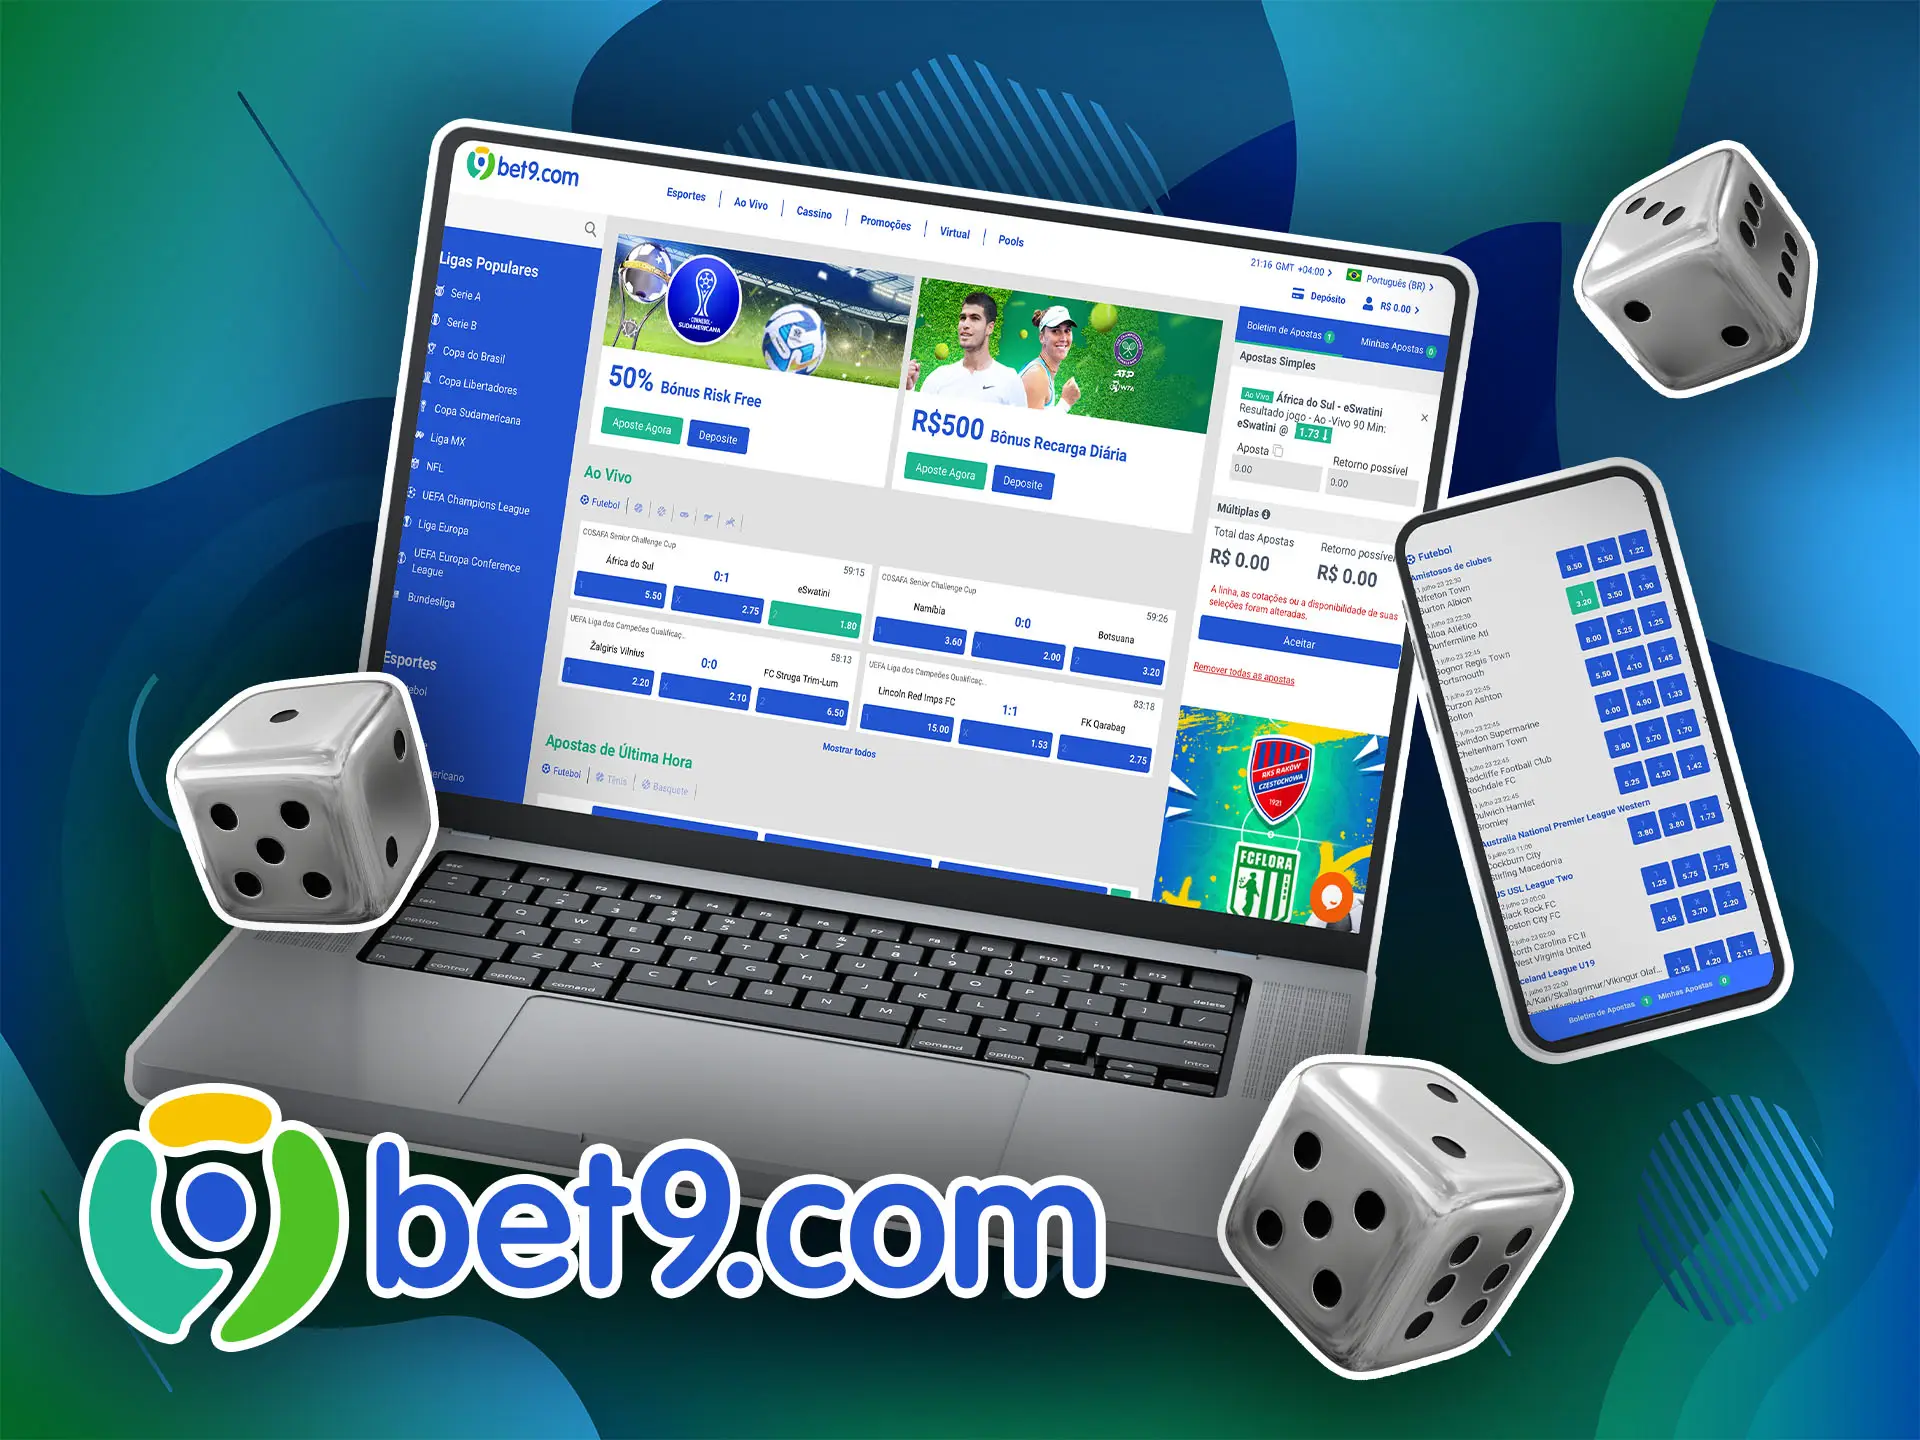 Registre-se no site do Bet9, recarregue seu saldo e selecione o evento em que deseja apostar.